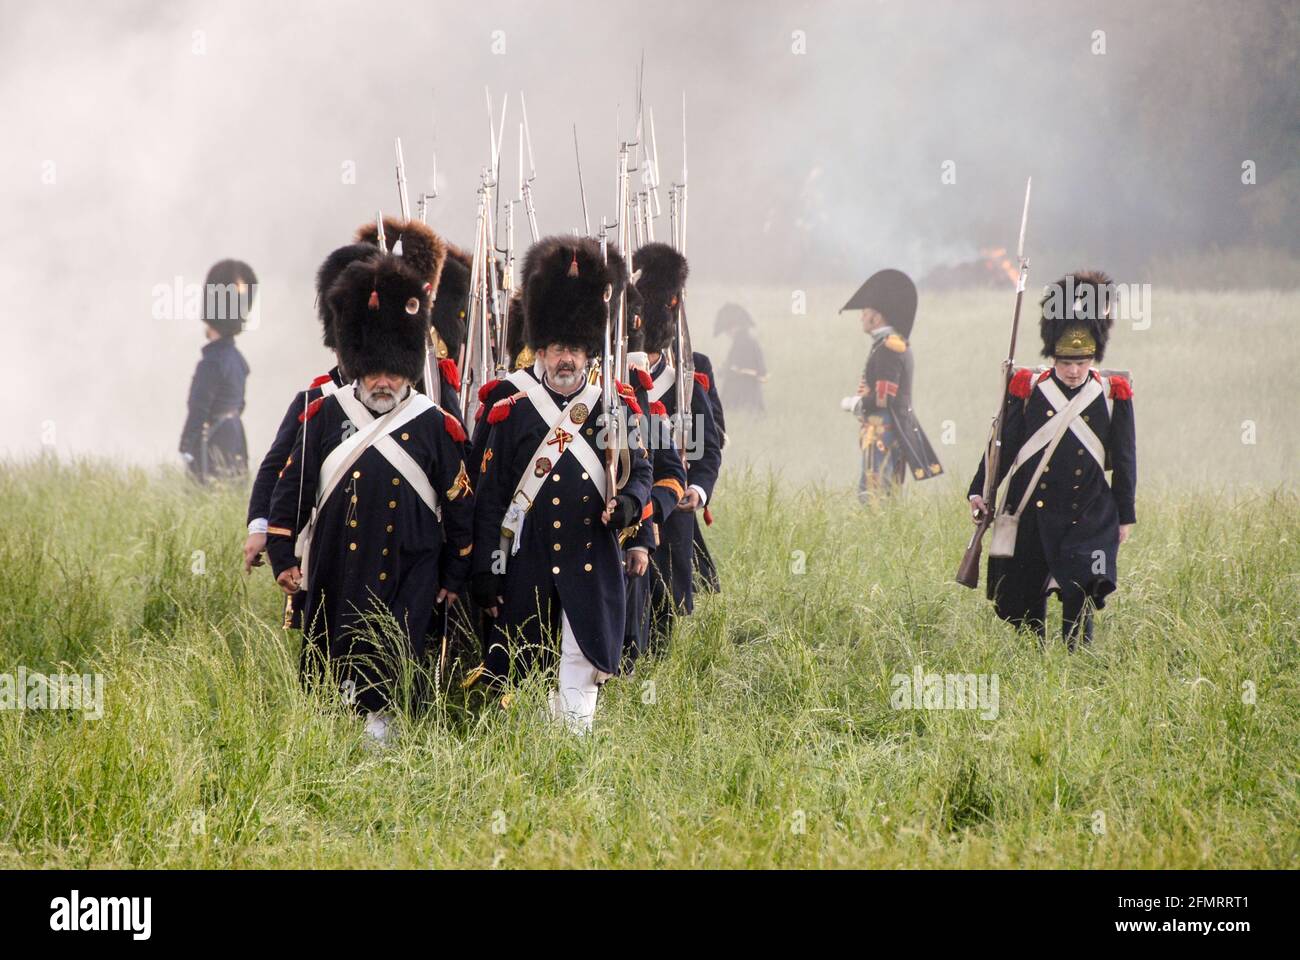 Aufmarsch von Napoleons Alter Garde während der Darstellung der Schlacht von Waterloo. - Napoleons alte Garde wird bei der Nachstellung der Schlacht von Waterloo in Position gebracht. Stockfoto